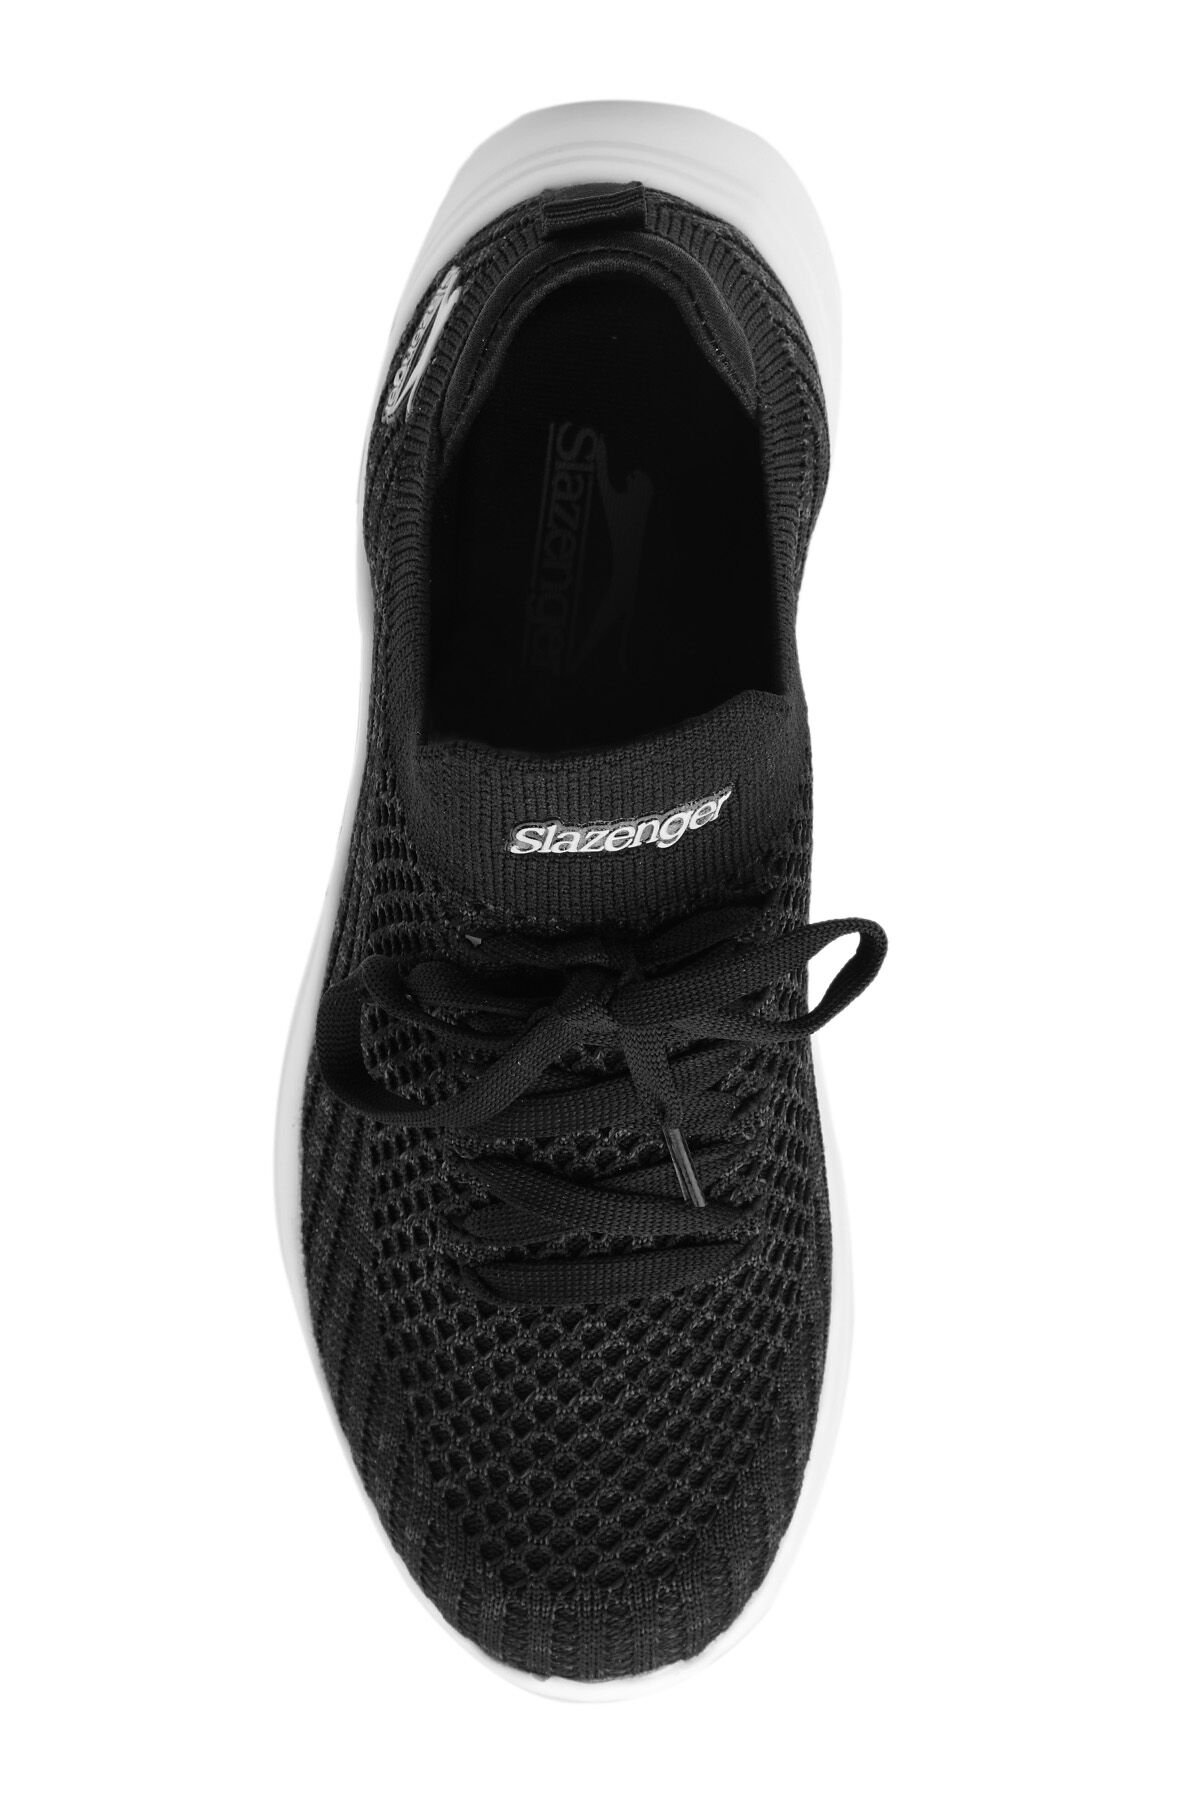 Slazenger ACCOUNT Sneaker Kadın Ayakkabı Siyah / Gri - Thumbnail